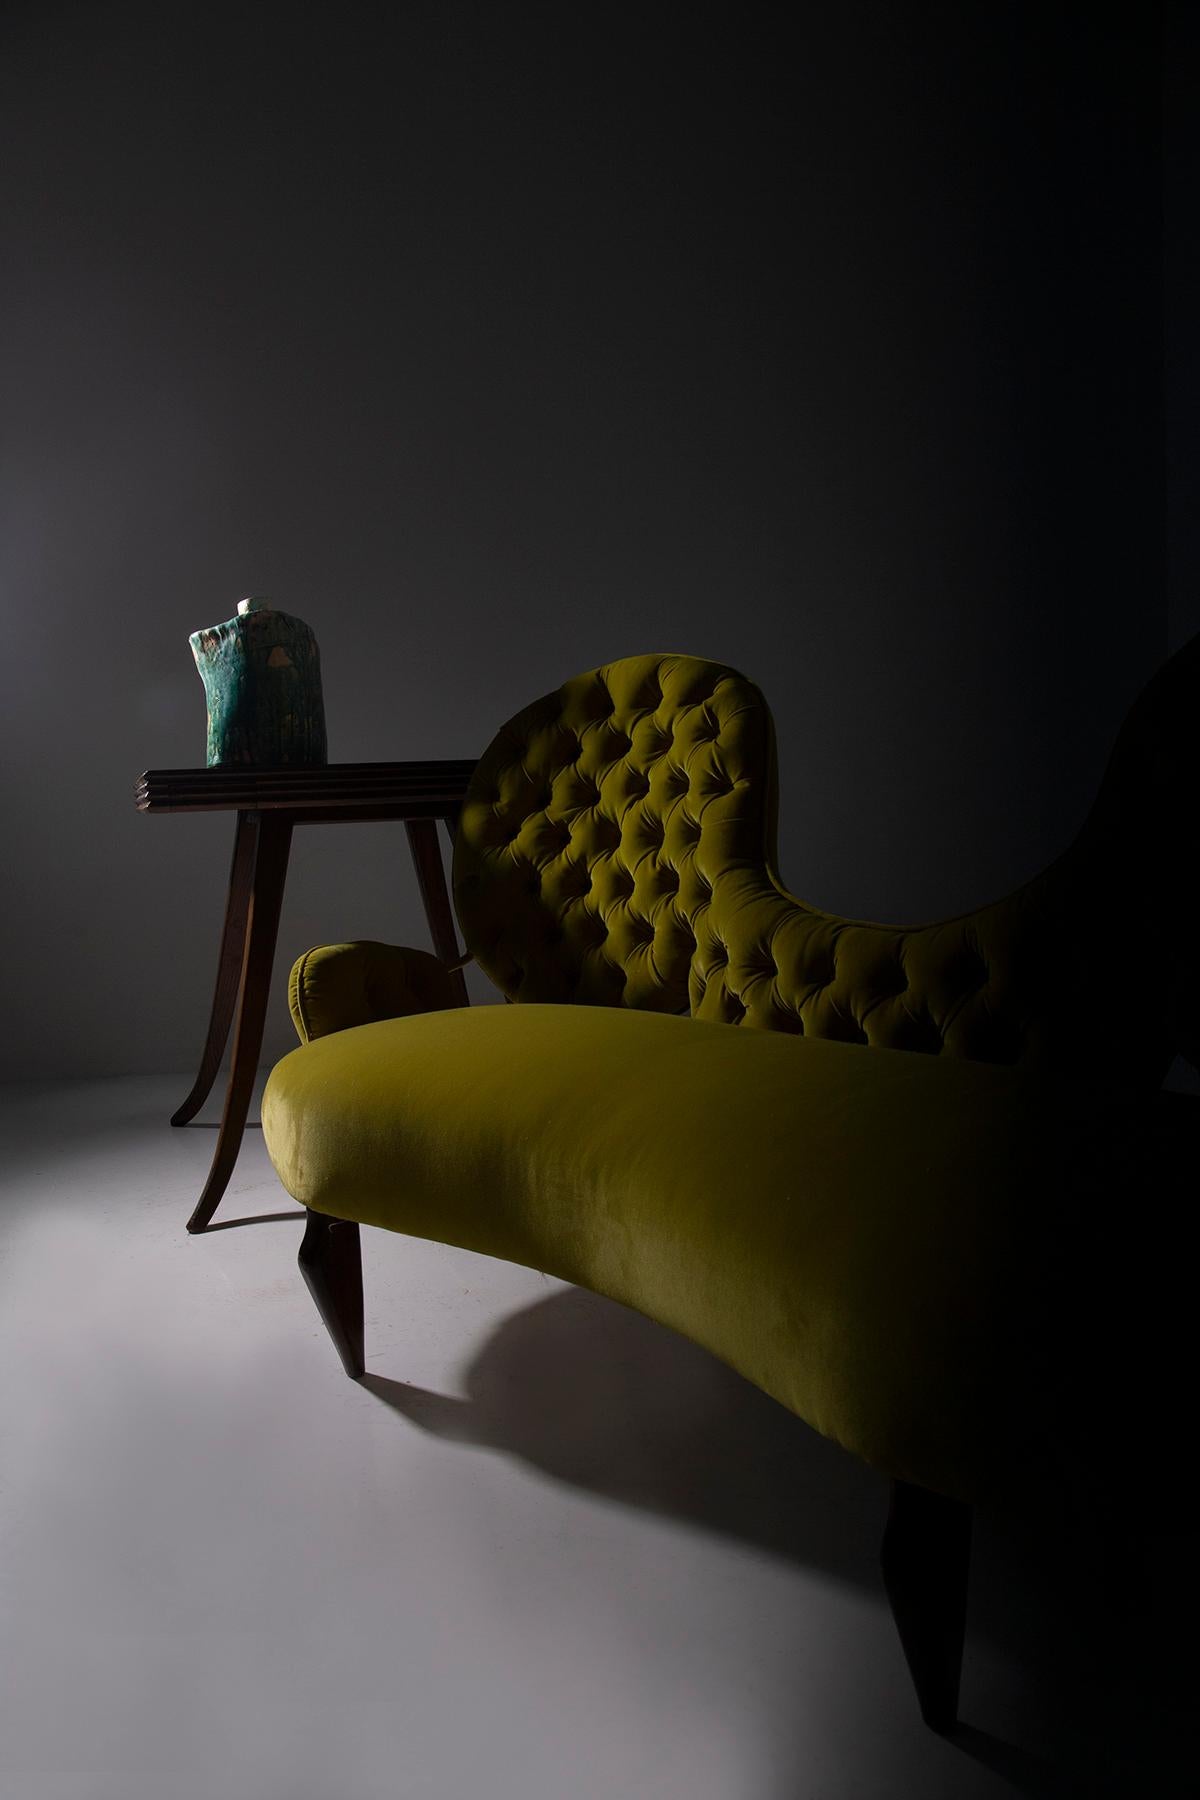 Treten Sie ein in die Welt der zeitlosen Raffinesse und Anmut mit dem exquisiten italienischen Sofa des meisterhaften Renzo Zavanella, einer wahren Verkörperung der Eleganz der 1950er Jahre. Dieses bemerkenswerte Stück wurde liebevoll restauriert,